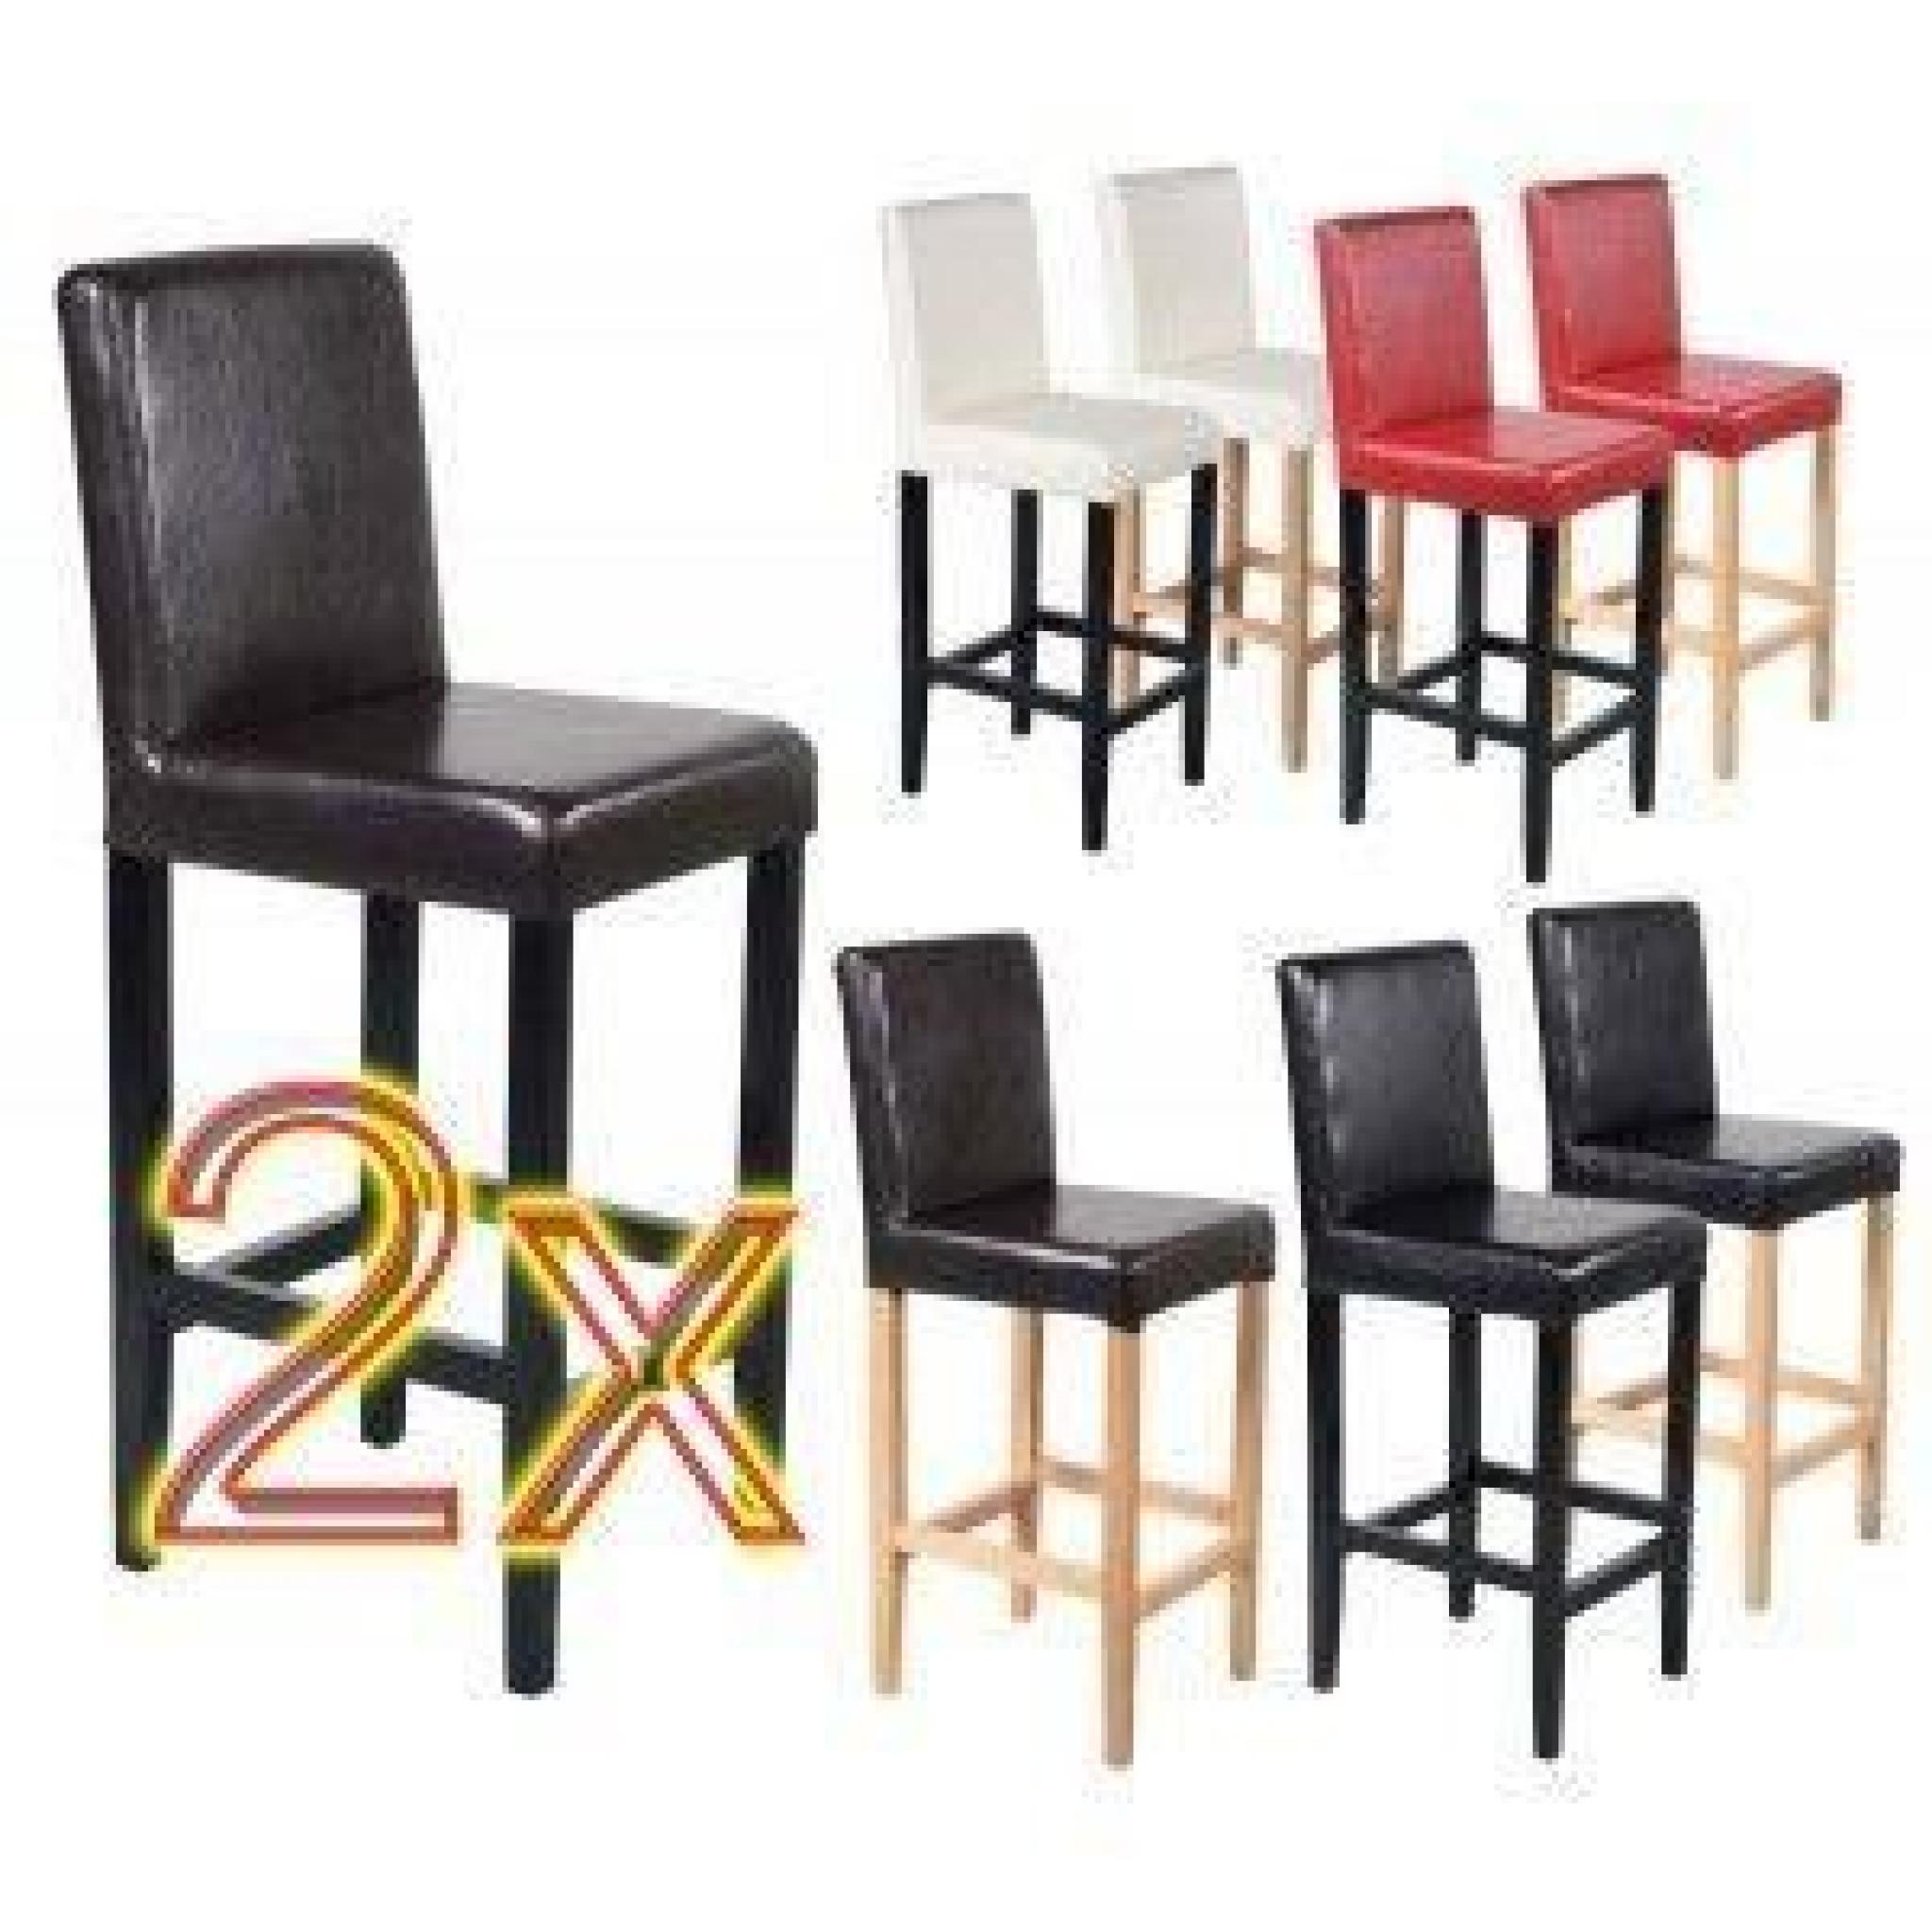 2 tabourets / chaises de bar Vicenza cuir crème